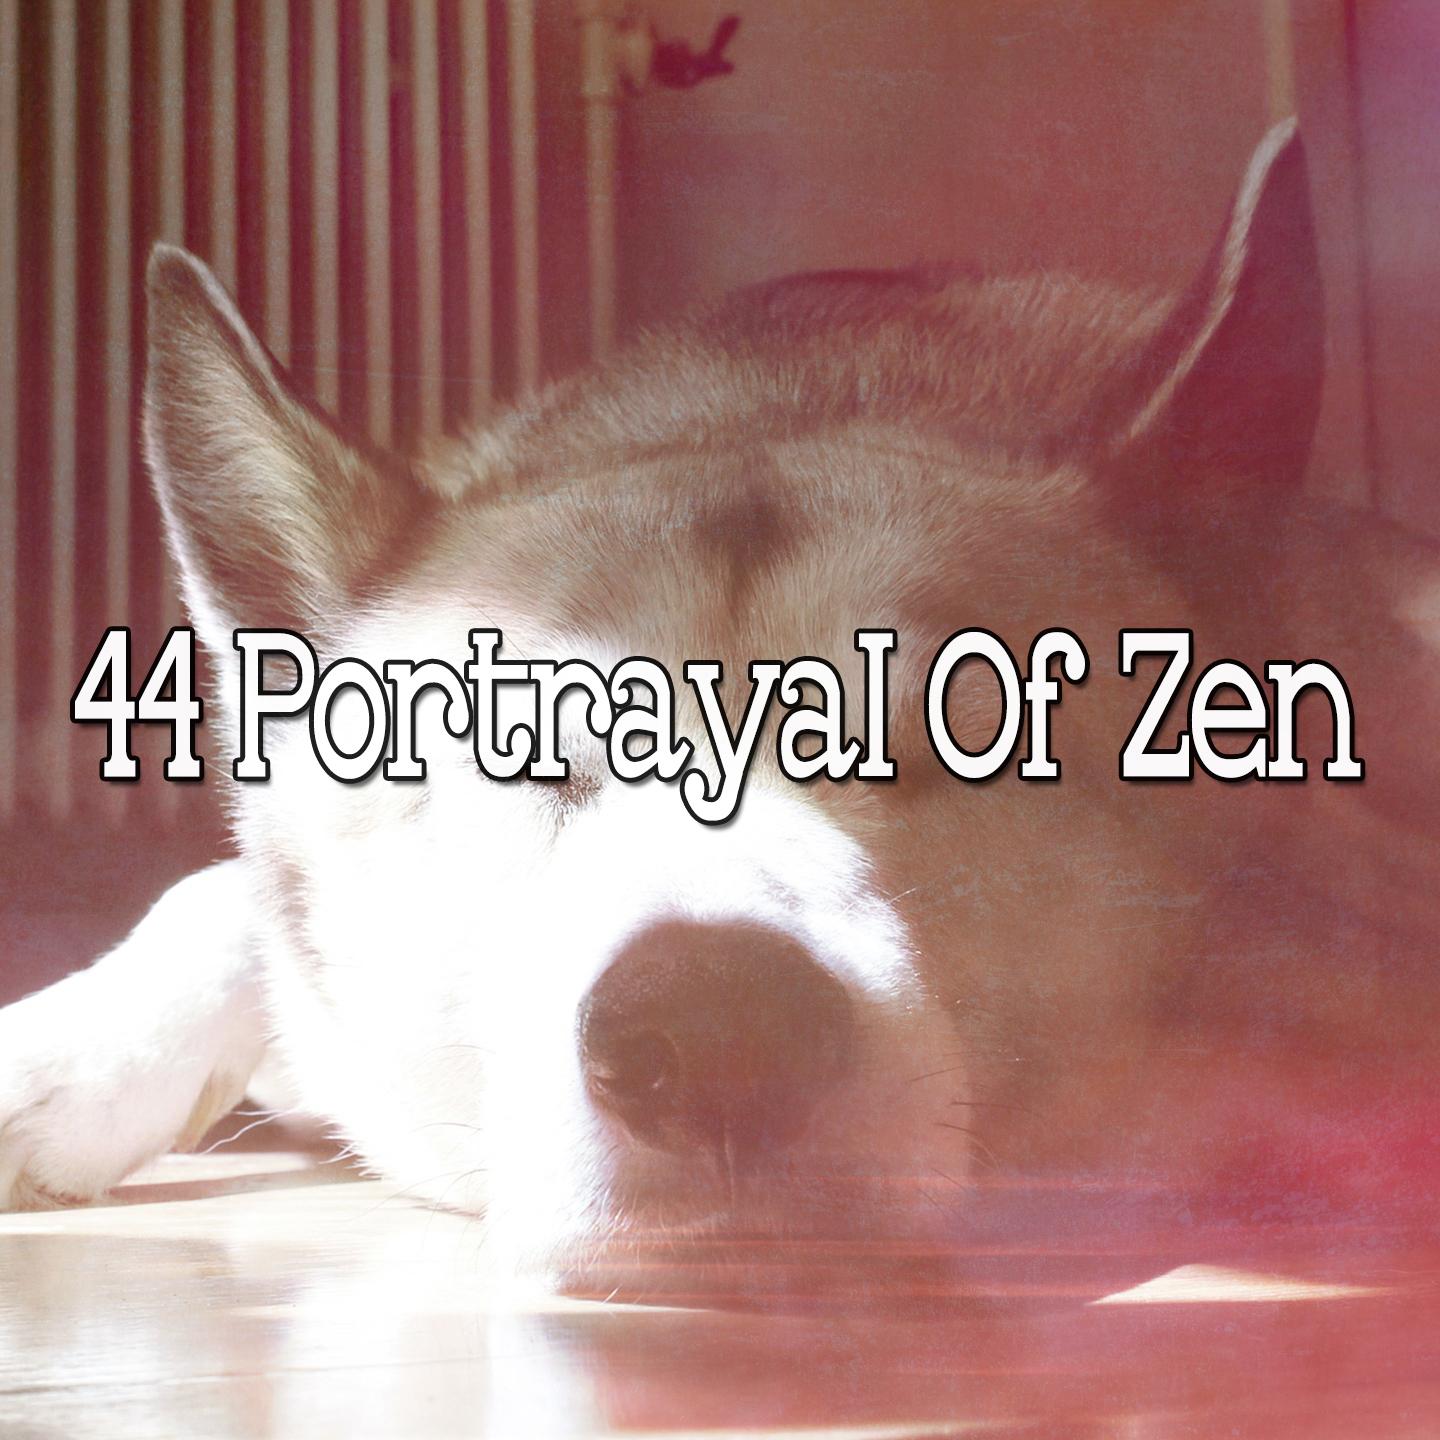 44 Portrayal of Zen